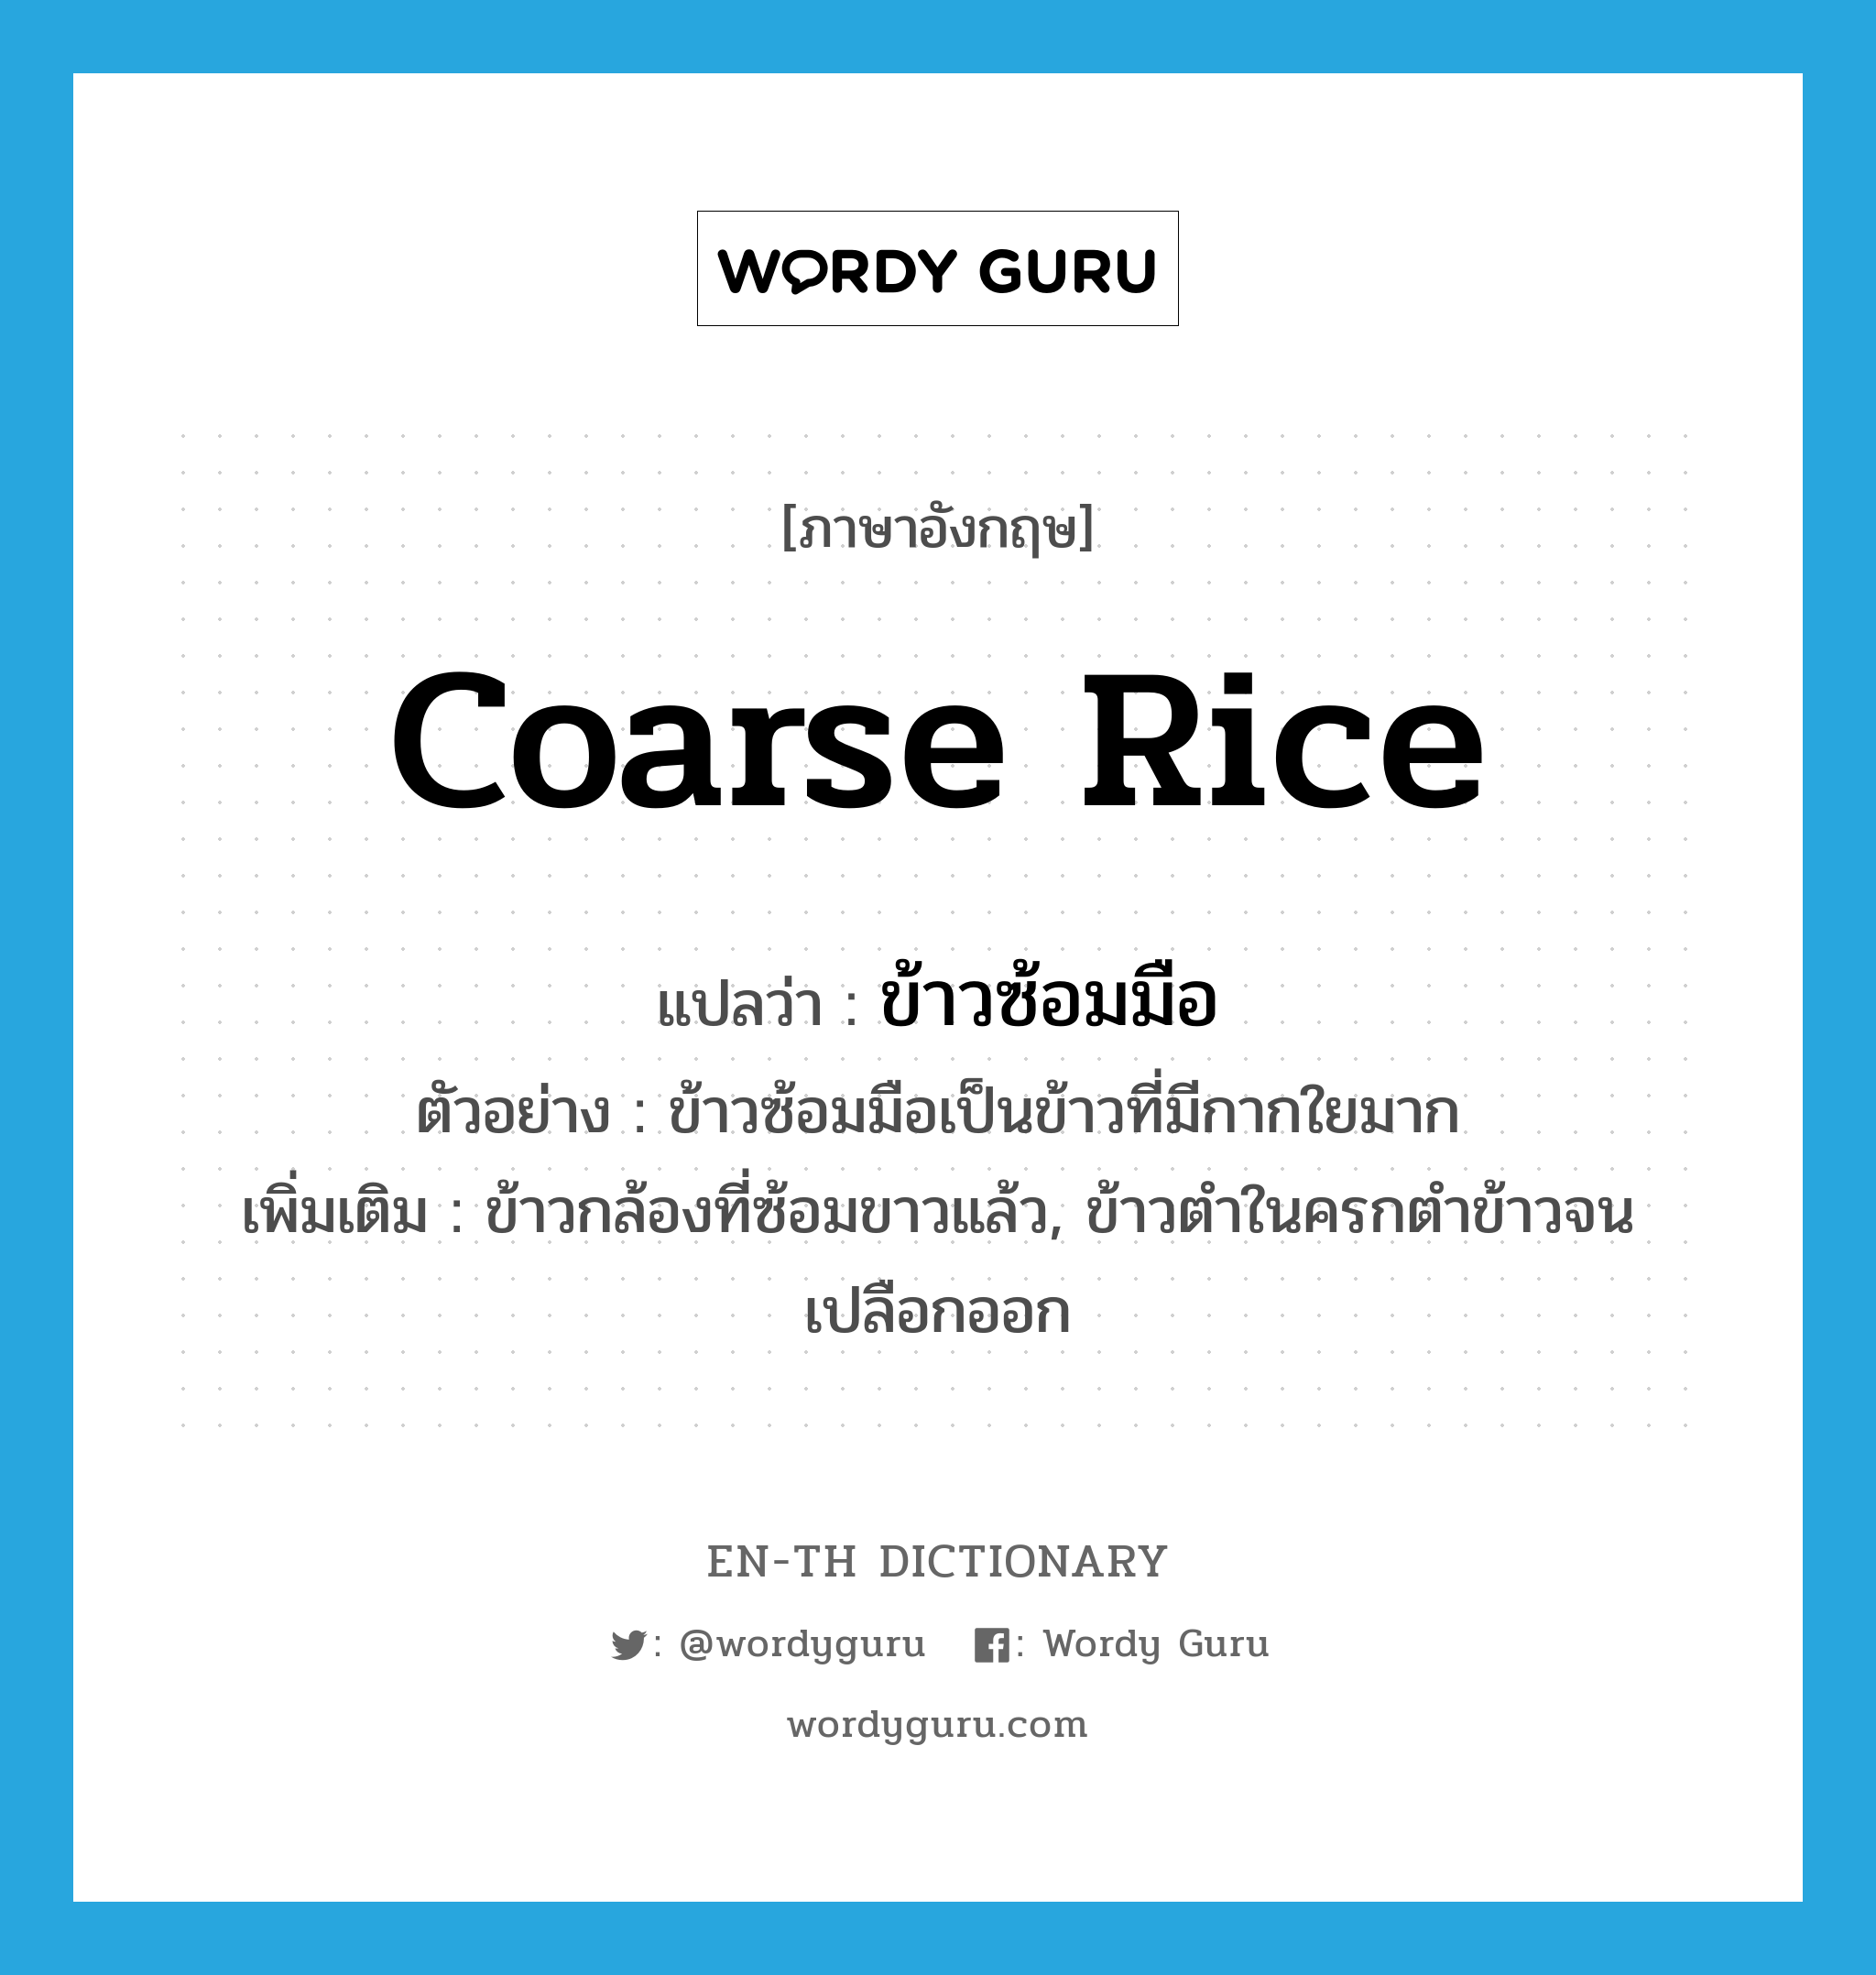 coarse rice แปลว่า?, คำศัพท์ภาษาอังกฤษ coarse rice แปลว่า ข้าวซ้อมมือ ประเภท N ตัวอย่าง ข้าวซ้อมมือเป็นข้าวที่มีกากใยมาก เพิ่มเติม ข้าวกล้องที่ซ้อมขาวแล้ว, ข้าวตำในครกตำข้าวจนเปลือกออก หมวด N